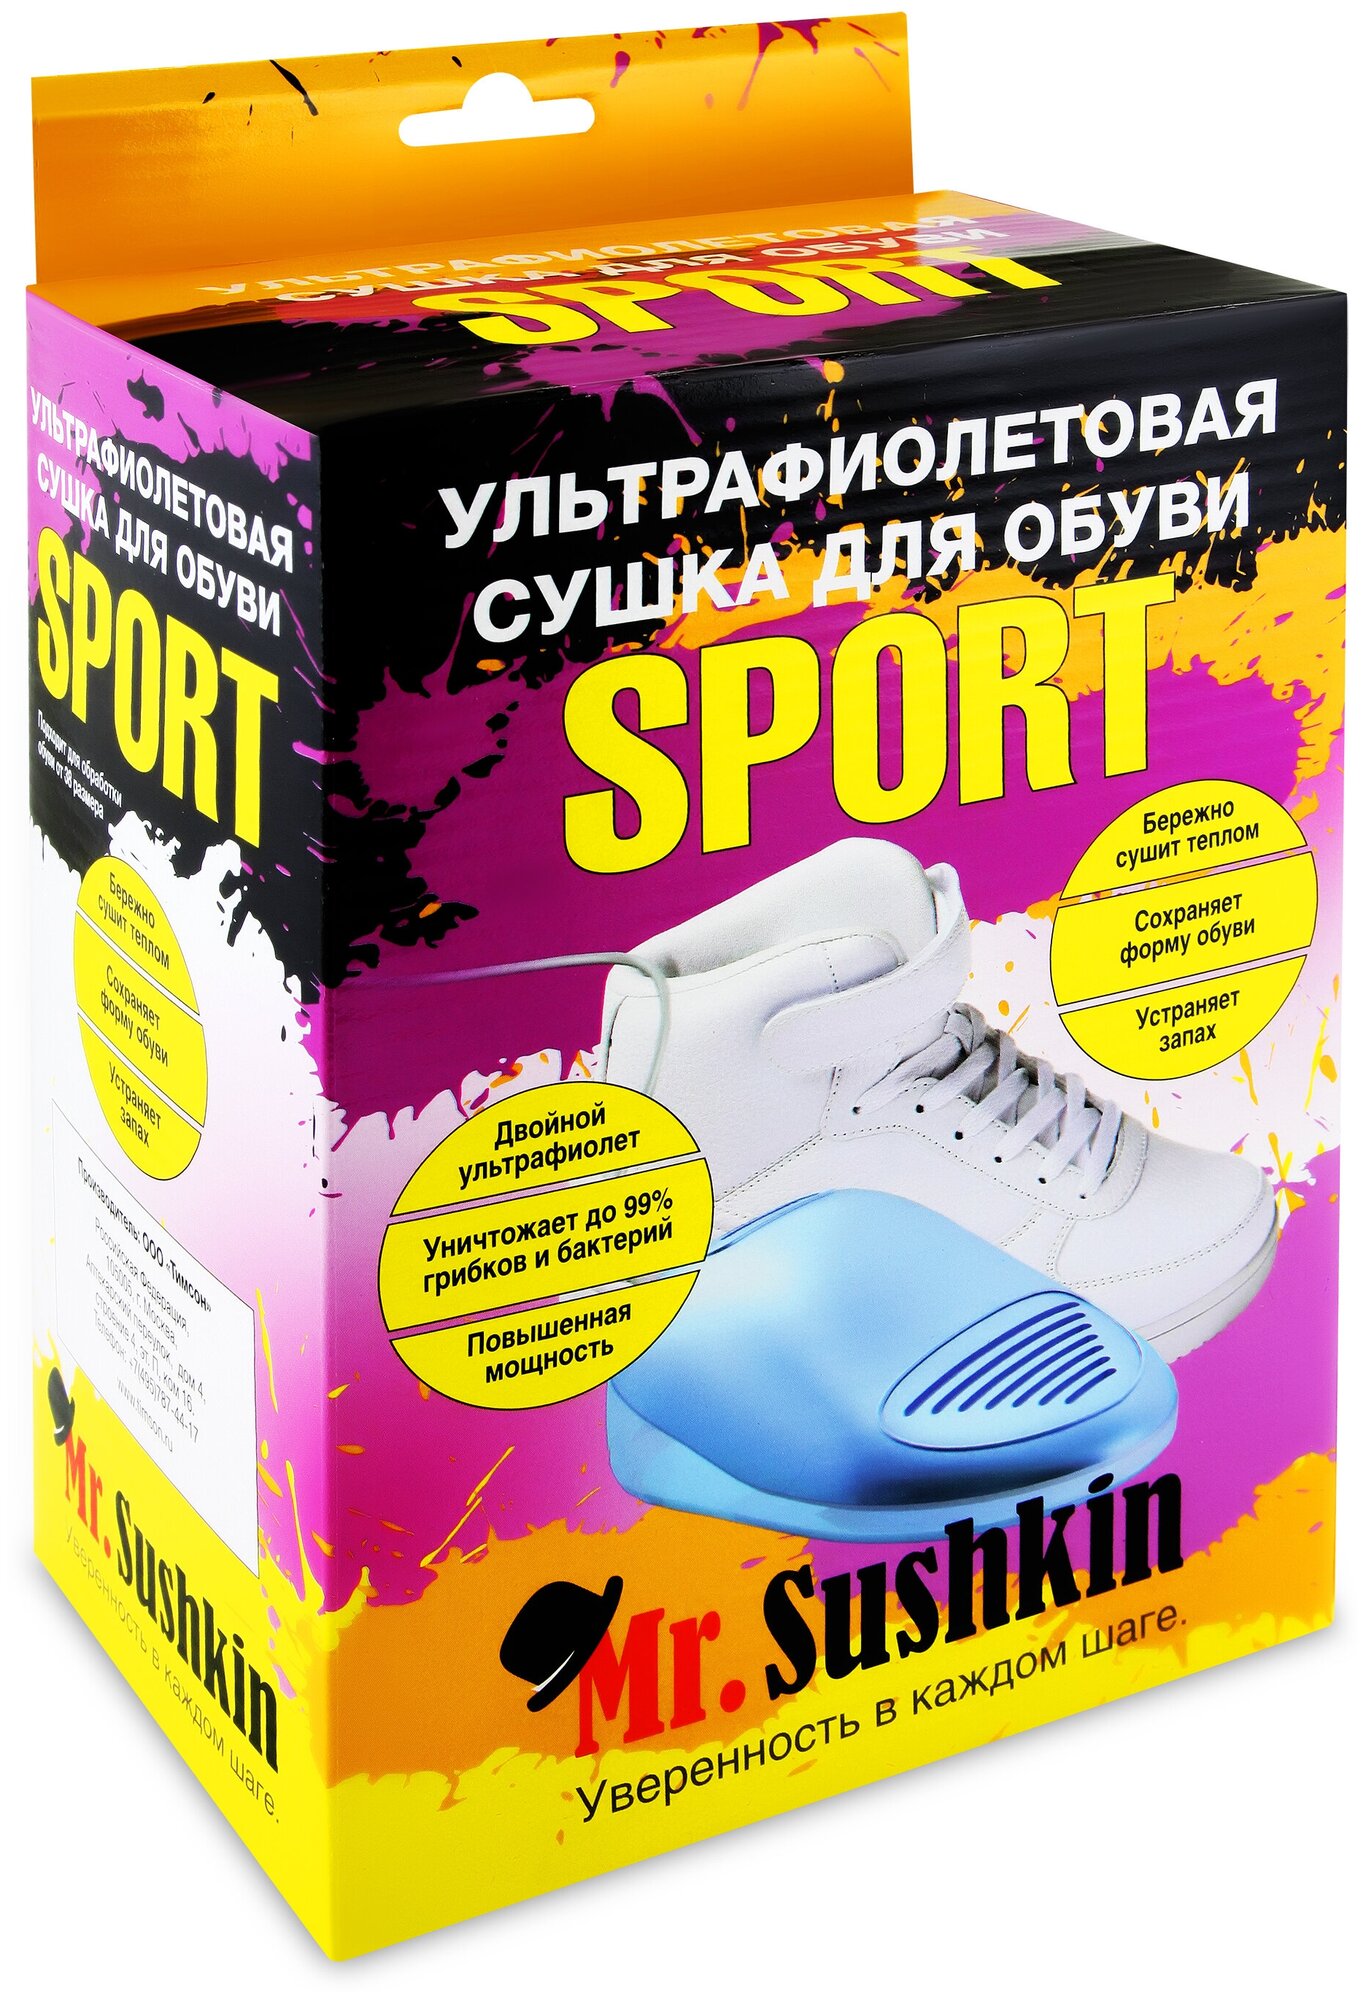 Ультрафиолетовая сушилка для обуви Mr.Sushkin Sport